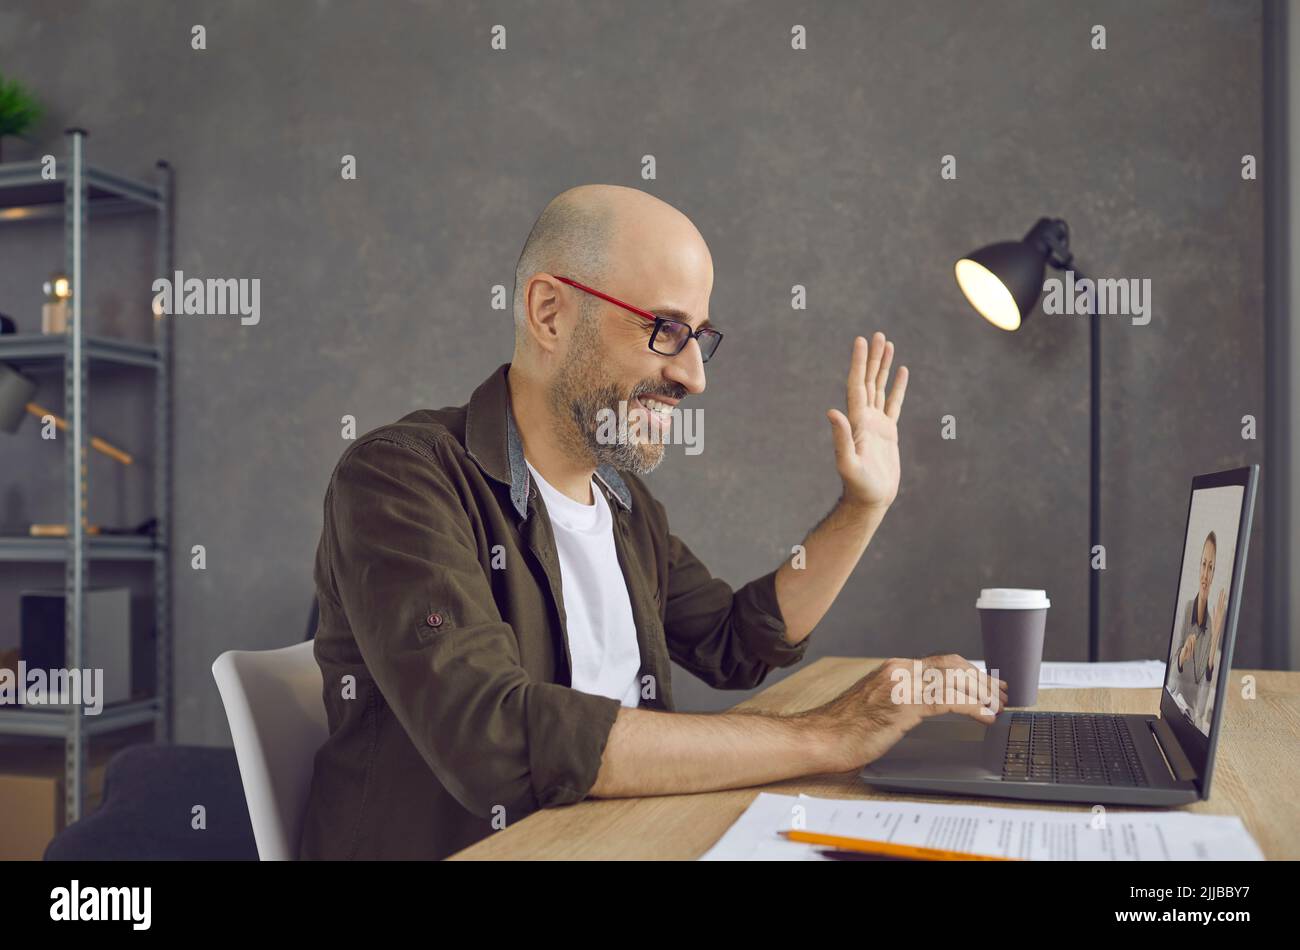 Homme qui commence une réunion d'affaires virtuelle et qui se fait un bonjour à l'écran d'un ordinateur portable Banque D'Images